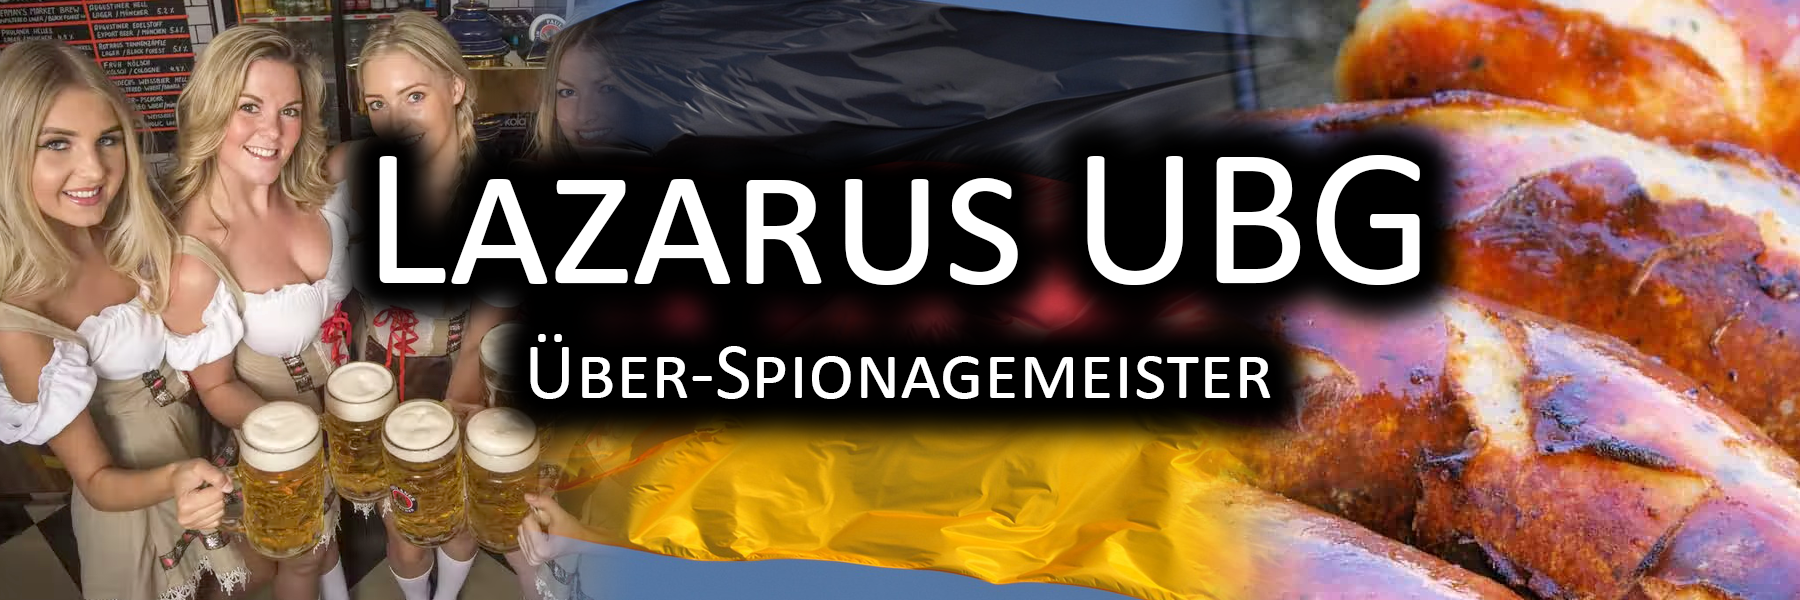 Lazarus UBG - Über-Spionagemeister